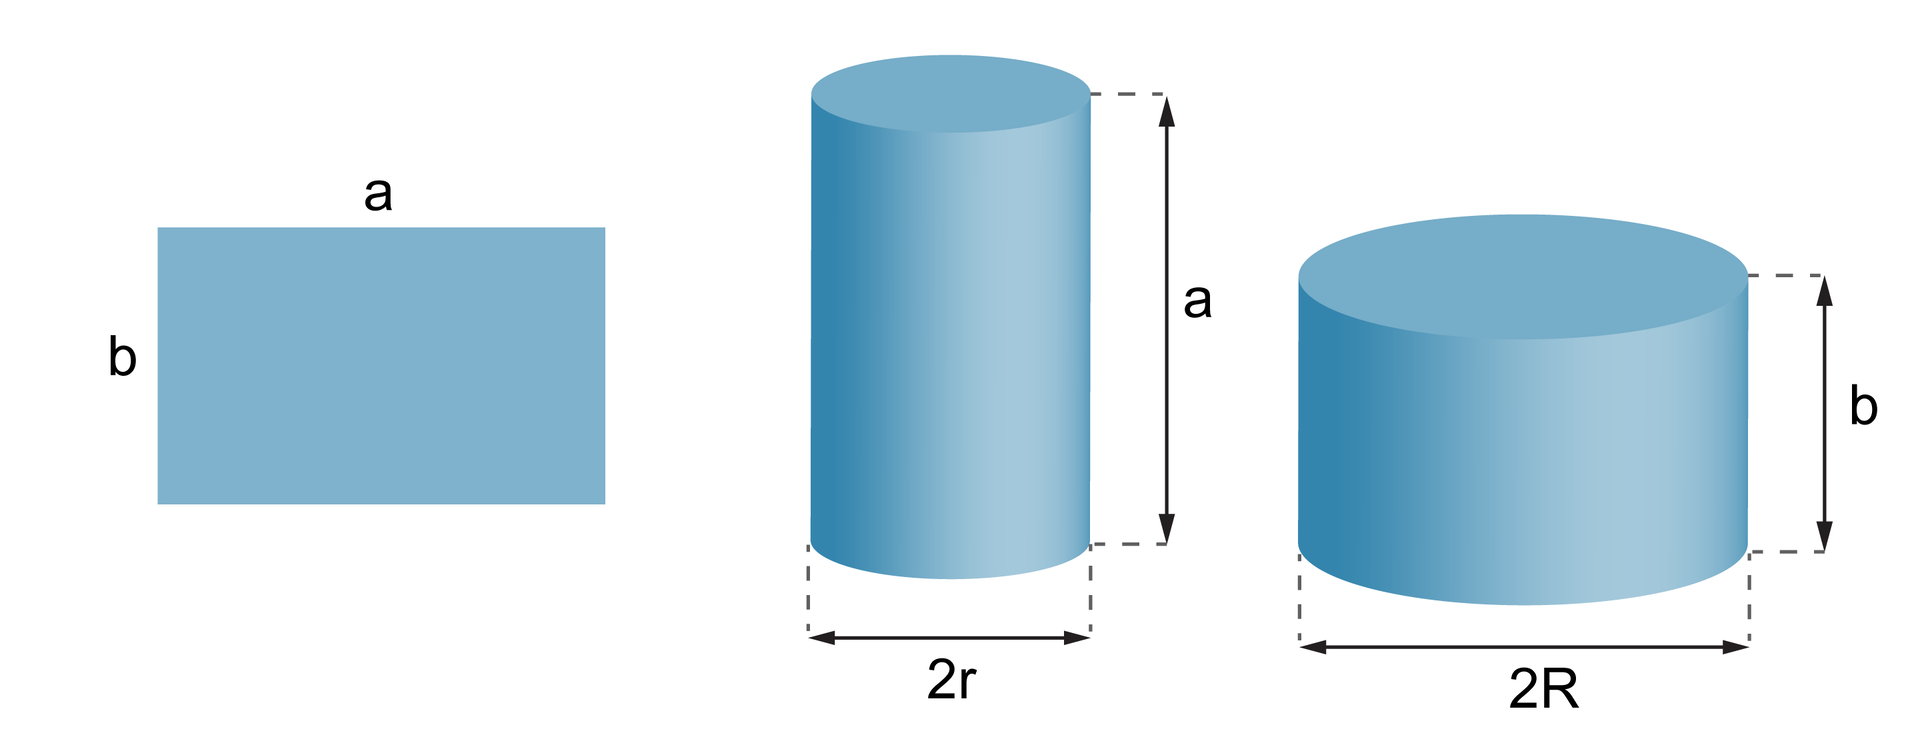 Rysunki prostokąta o bokach a i b oraz dwóch walców. Pierwszy walec ma wysokość równą a i średnicę podstawy b =2 pi r. Drugi walec ma wysokość równą b i średnicę podstawy a = 2 pi r.